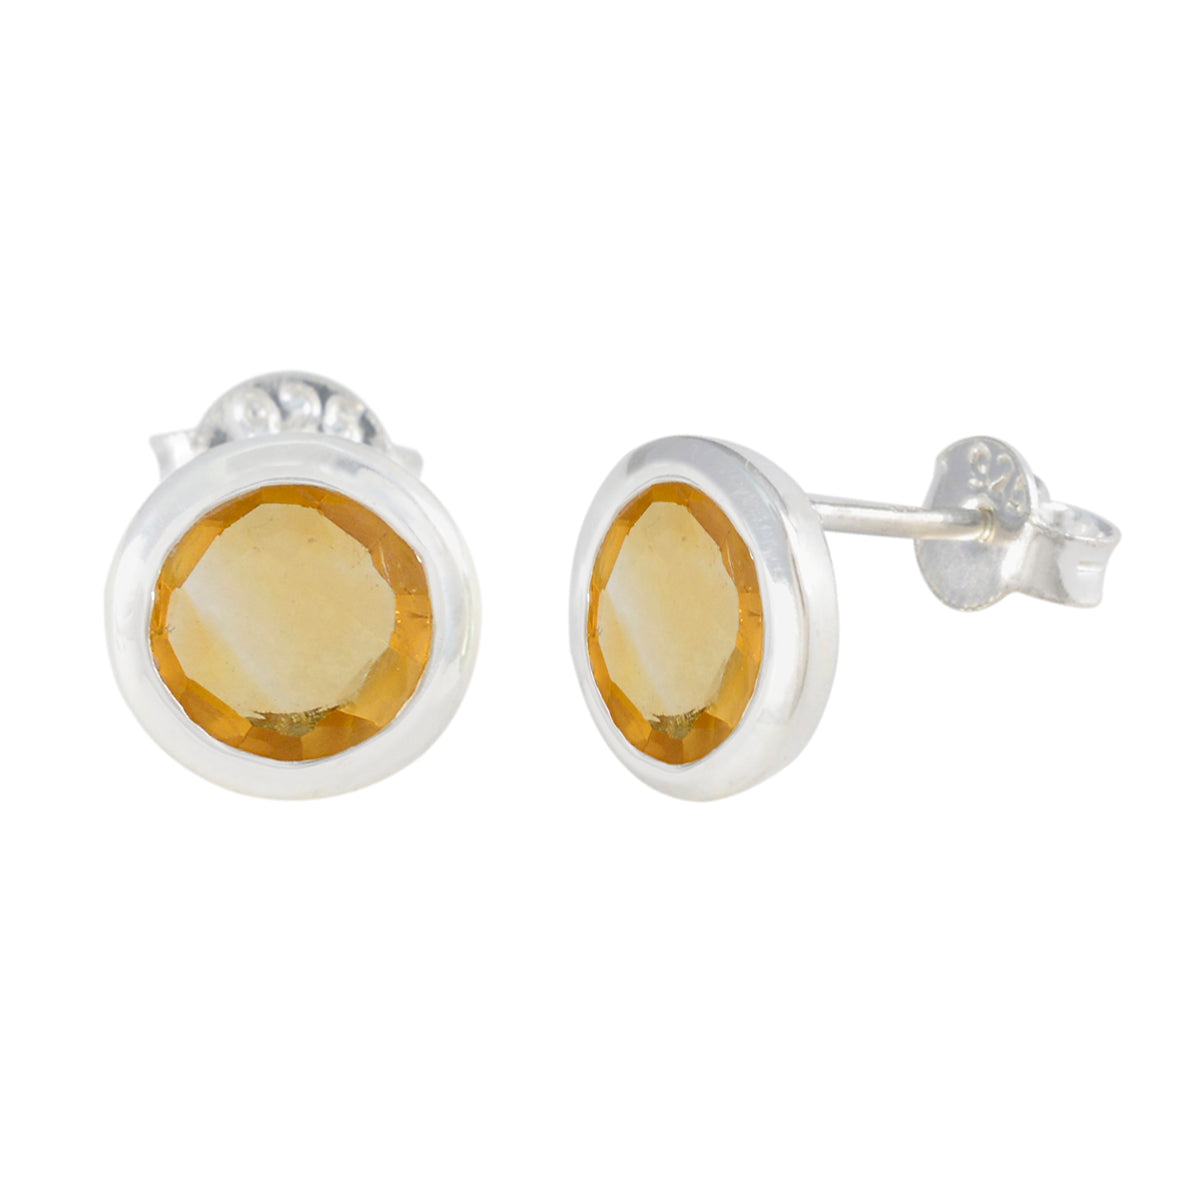 Riyo Fit Sterling Silver Earring For Women Citrine Earring Bezel Setting Yellow Earring Stud Earring